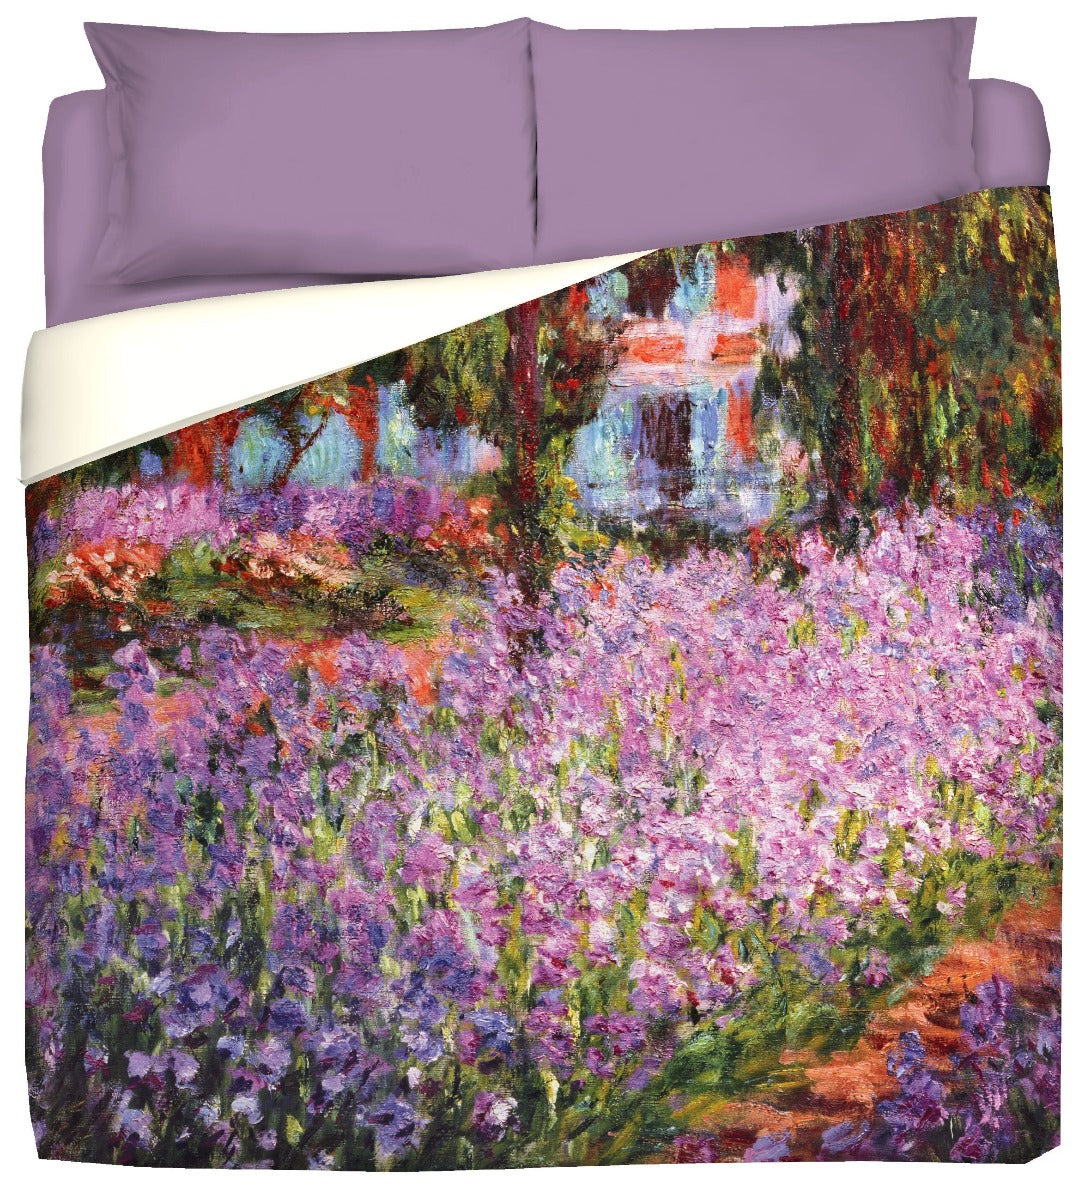 Winter Quilt - Artist's Monet-Garden